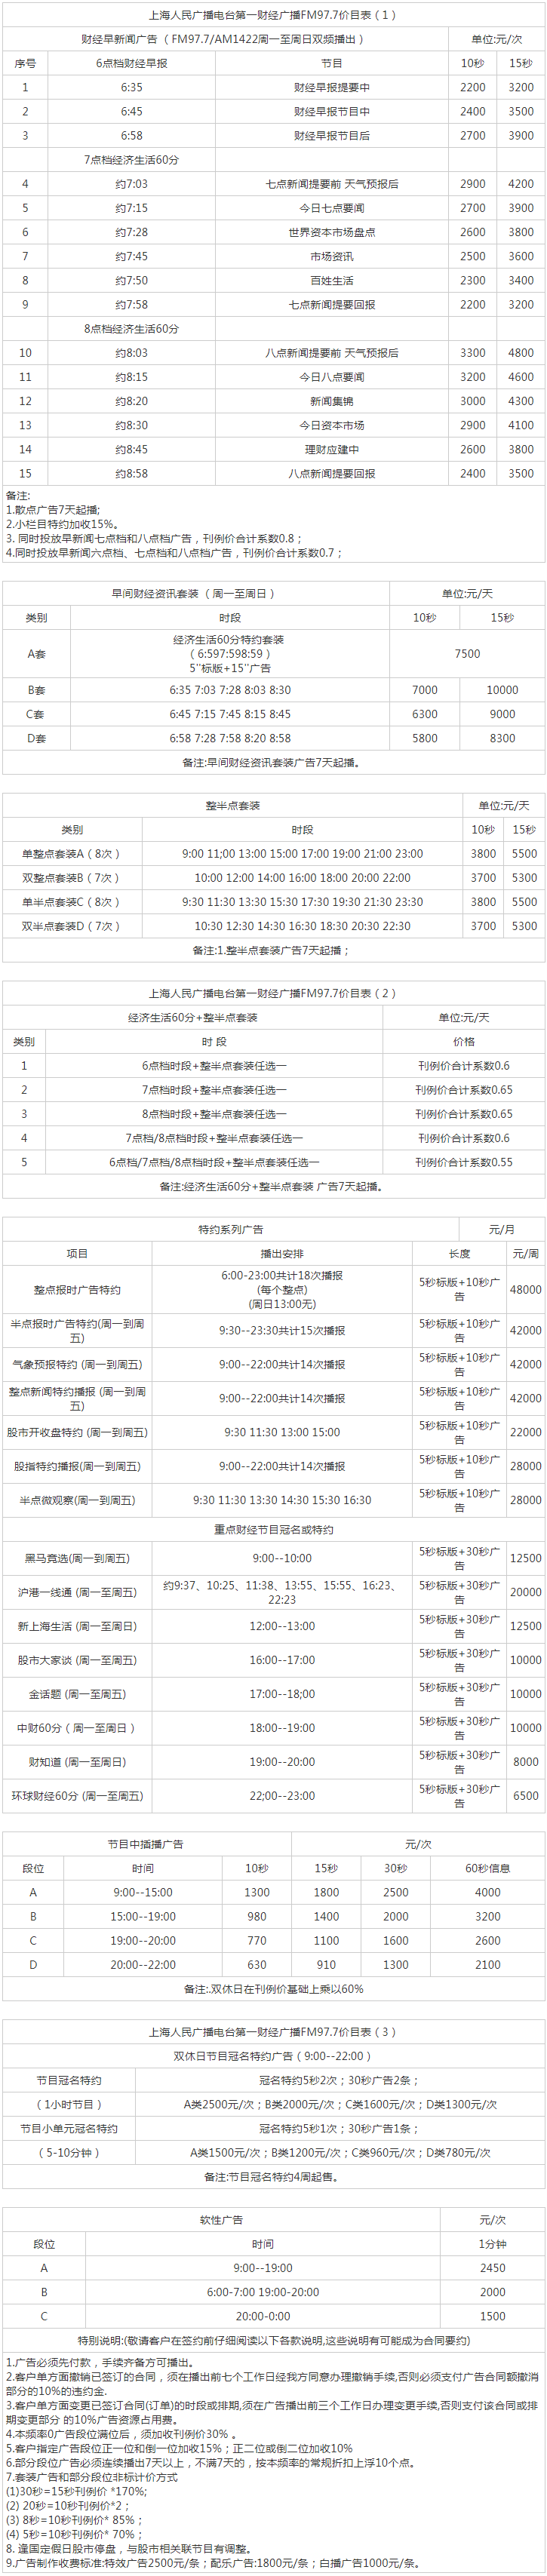 2013上海人民广播电台第一财经 AM1422_FM97.7广告报价表.png